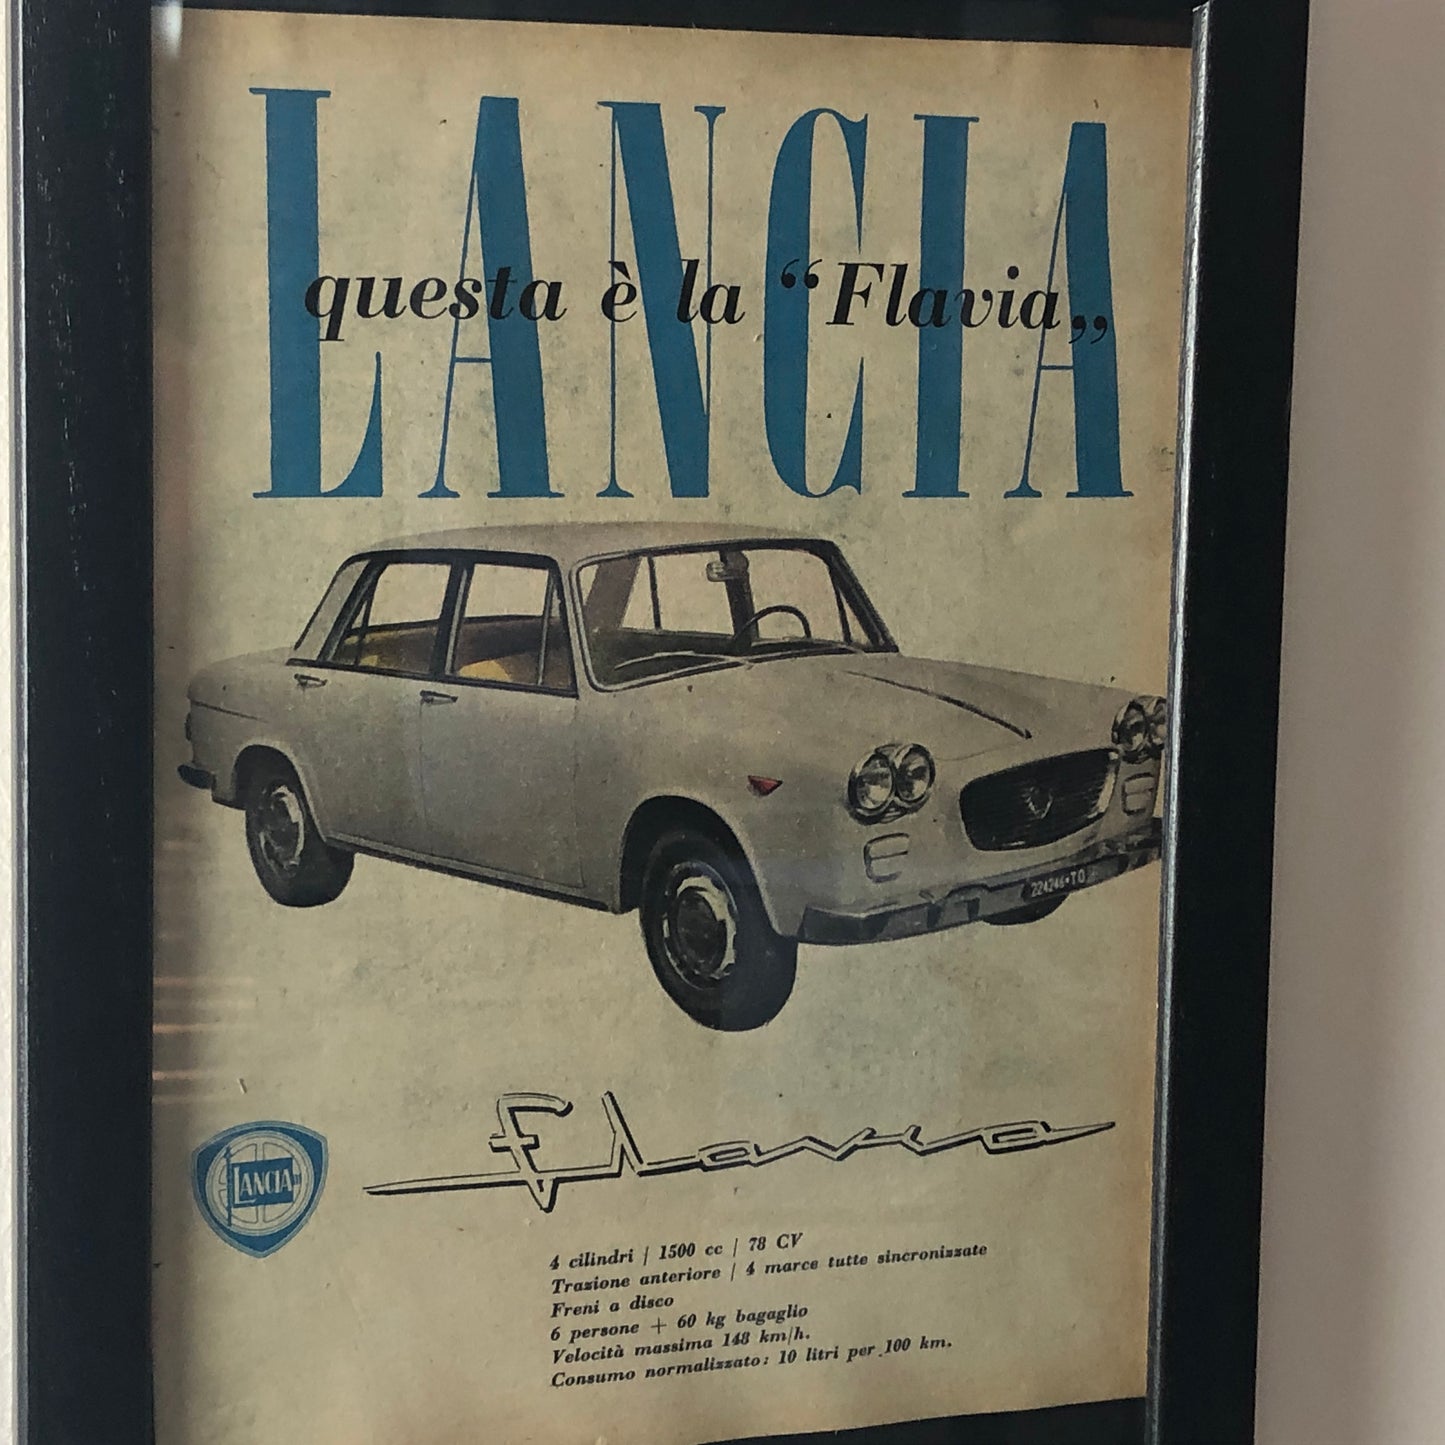 Lancia, Pubblicità Anno 1960 Questa è la Lancia Flavia